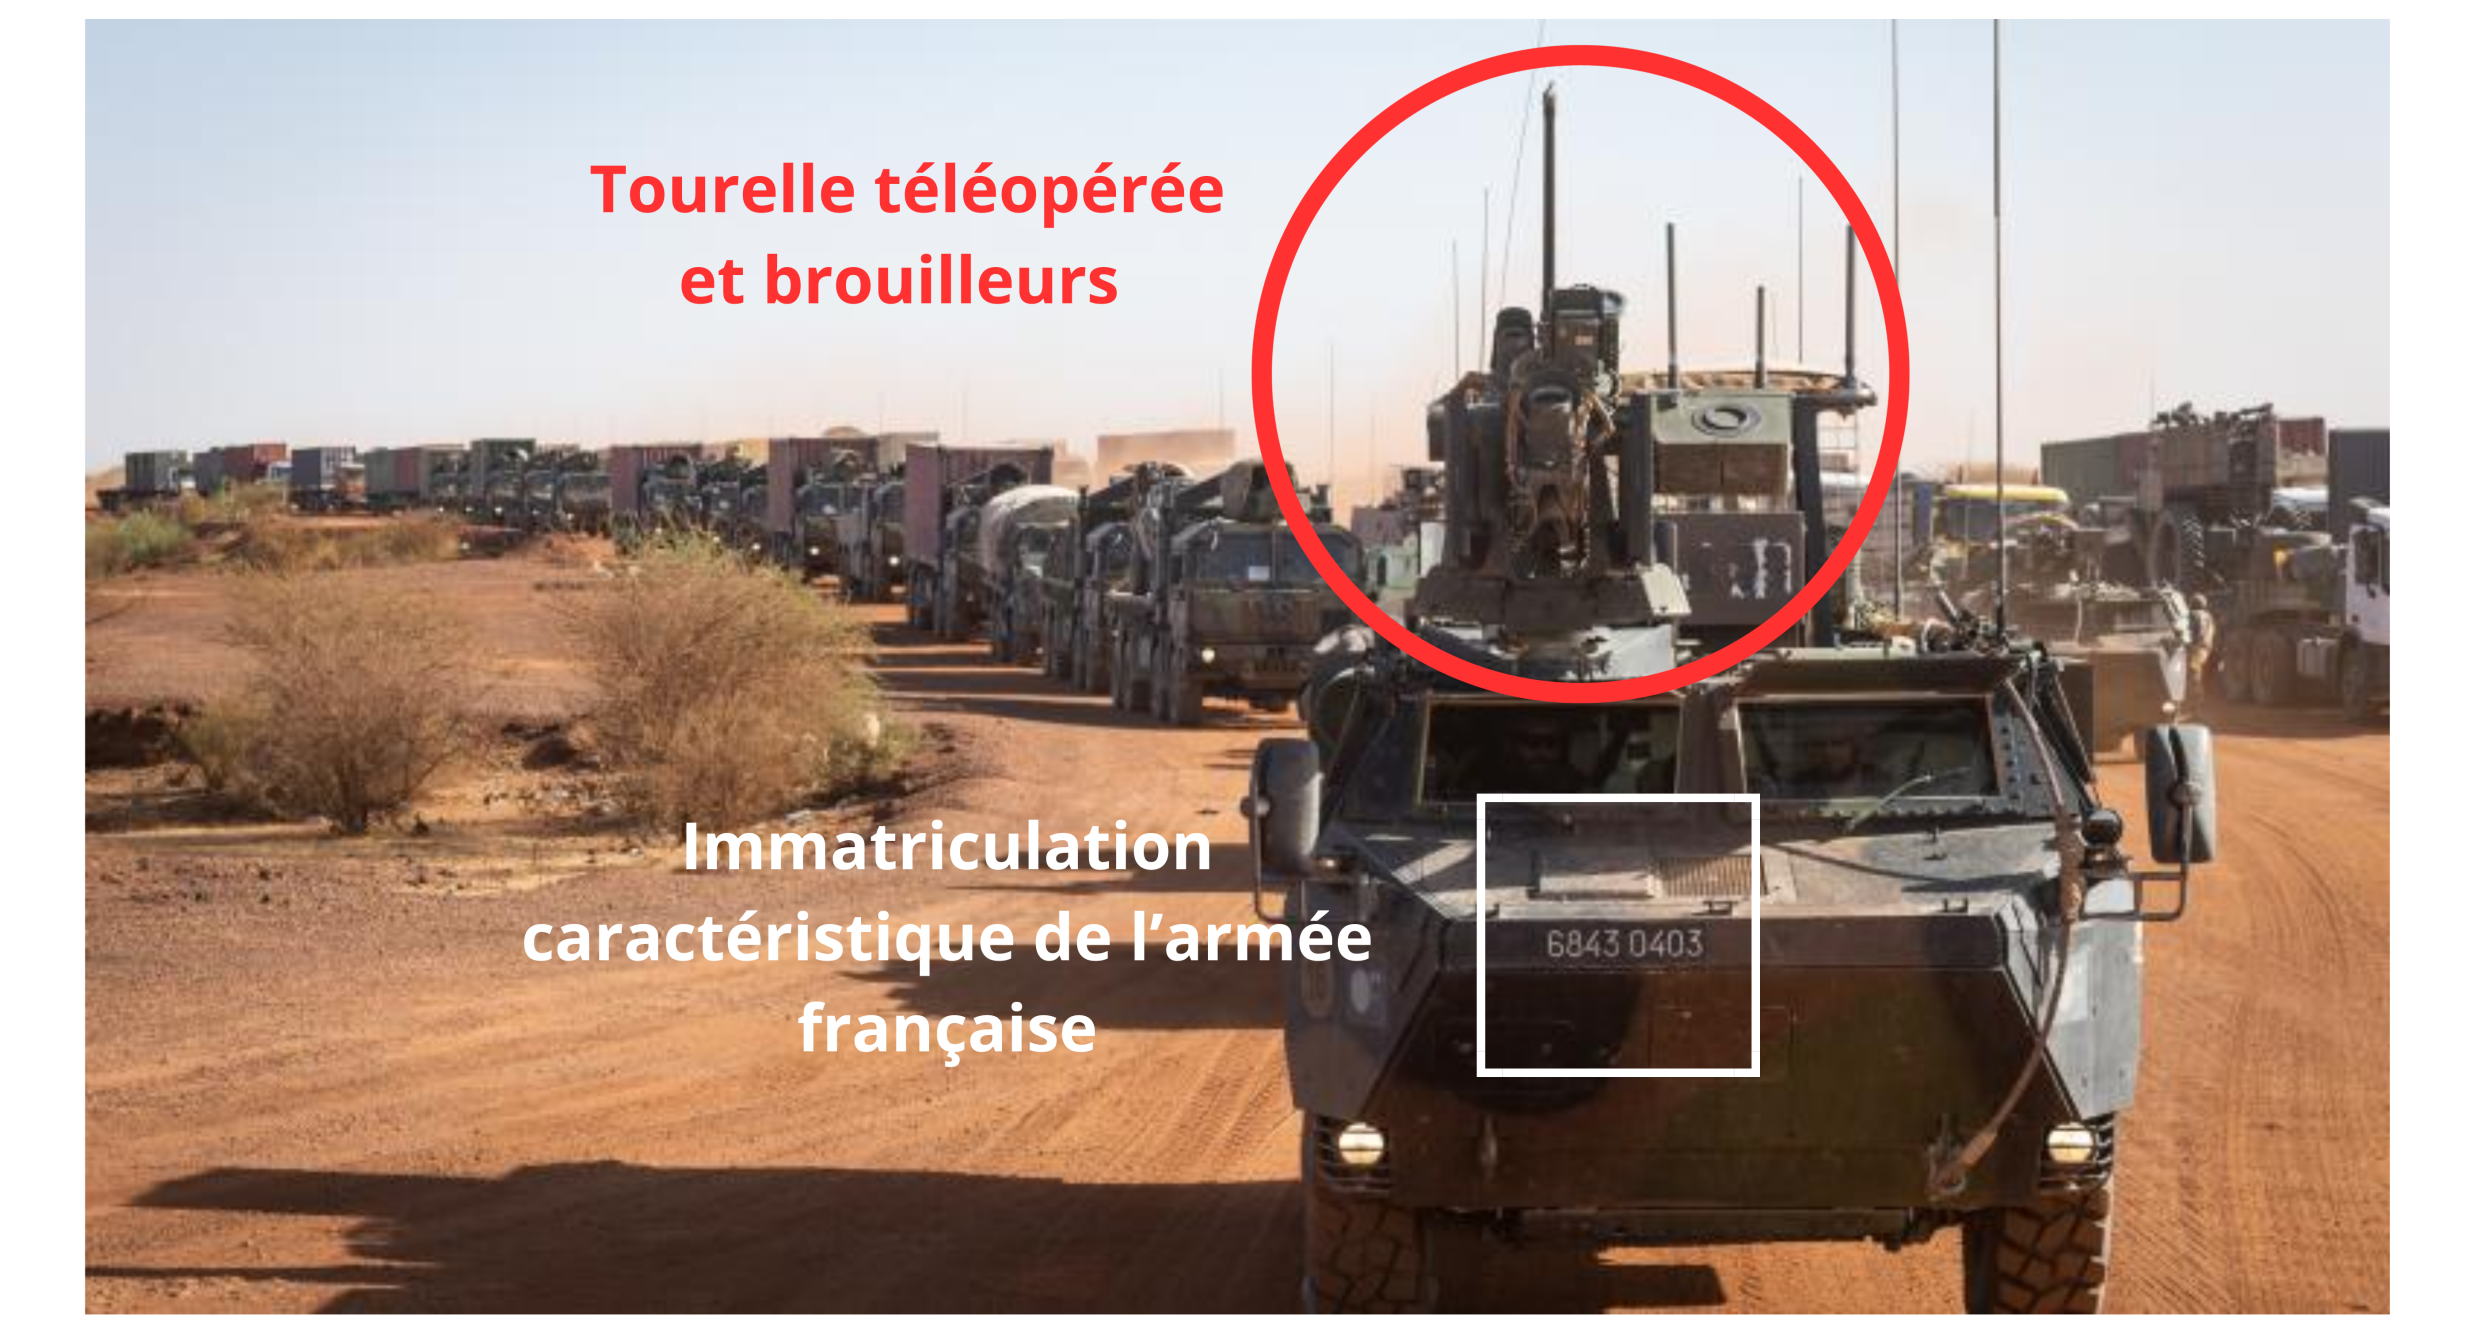 Ce type de blindé français, reconnaissable avec ces équipements, n'a jamais été vendu à l'armée malienne.